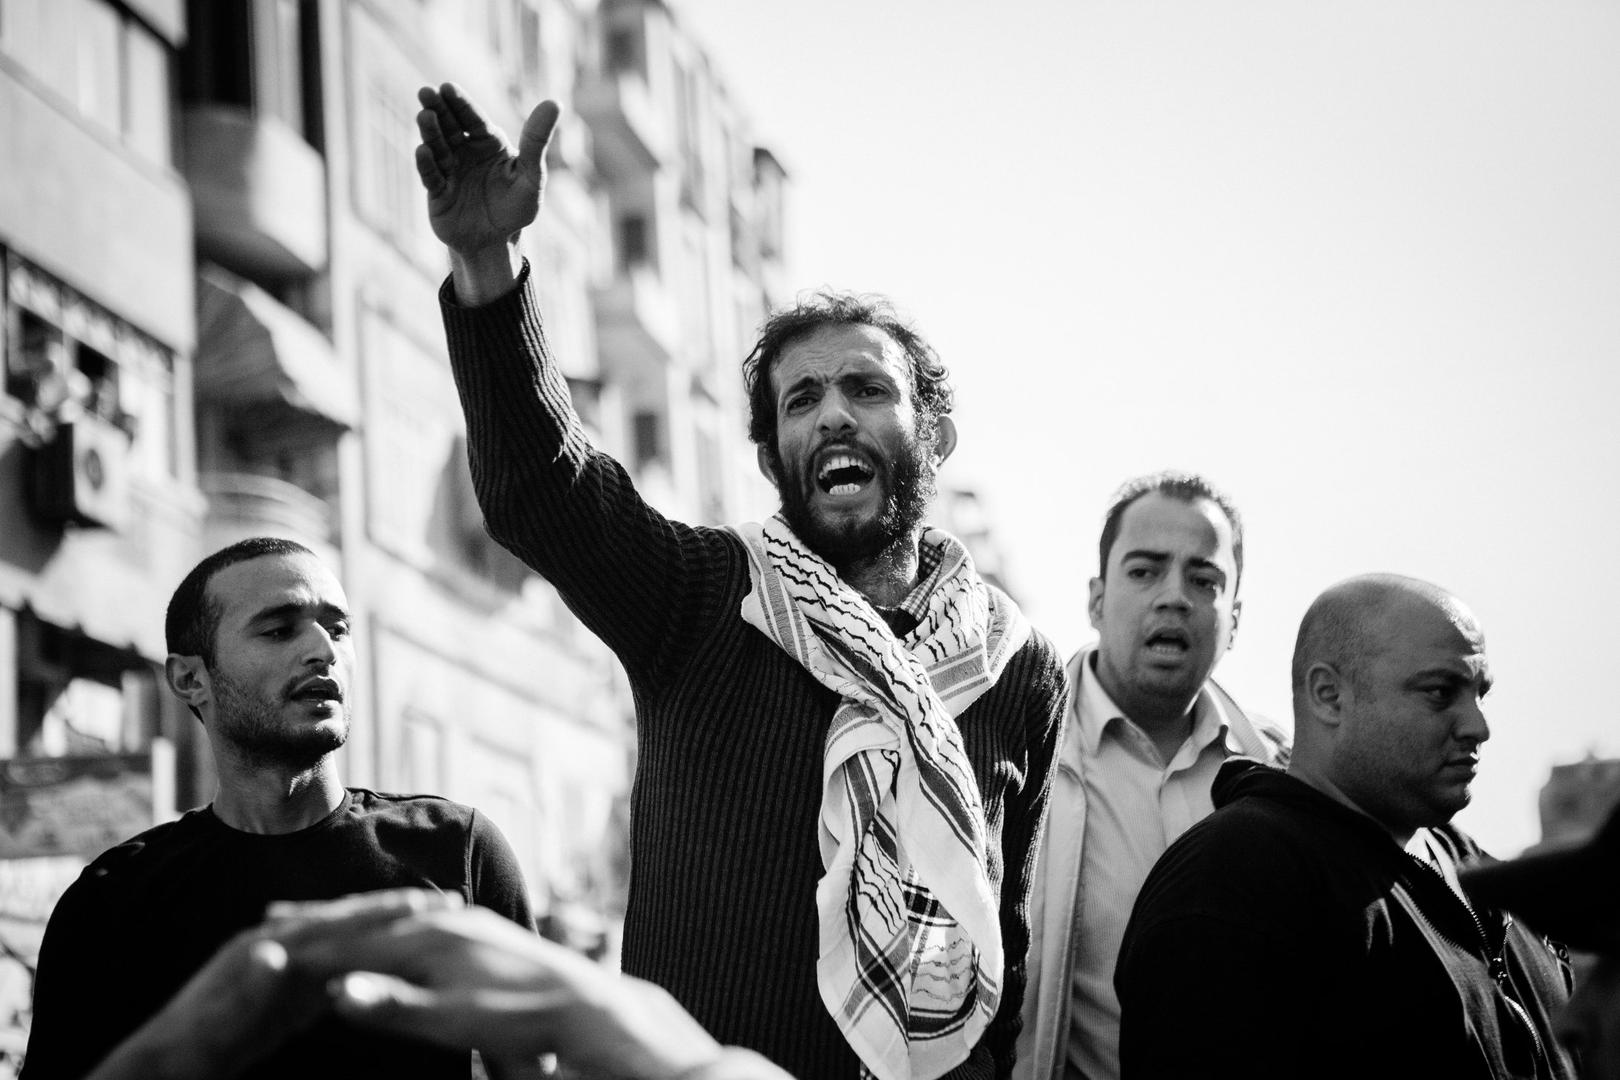 هيثم محمدين، مدافع عن الحقوق الاجتماعية، اعتُقل في 18 مايو/أيار 2018 بتهمتيّ "الانضمام إلى منظمة إرهابية" و"التحريض على التظاهر". © 2018 حسام الحملاوي